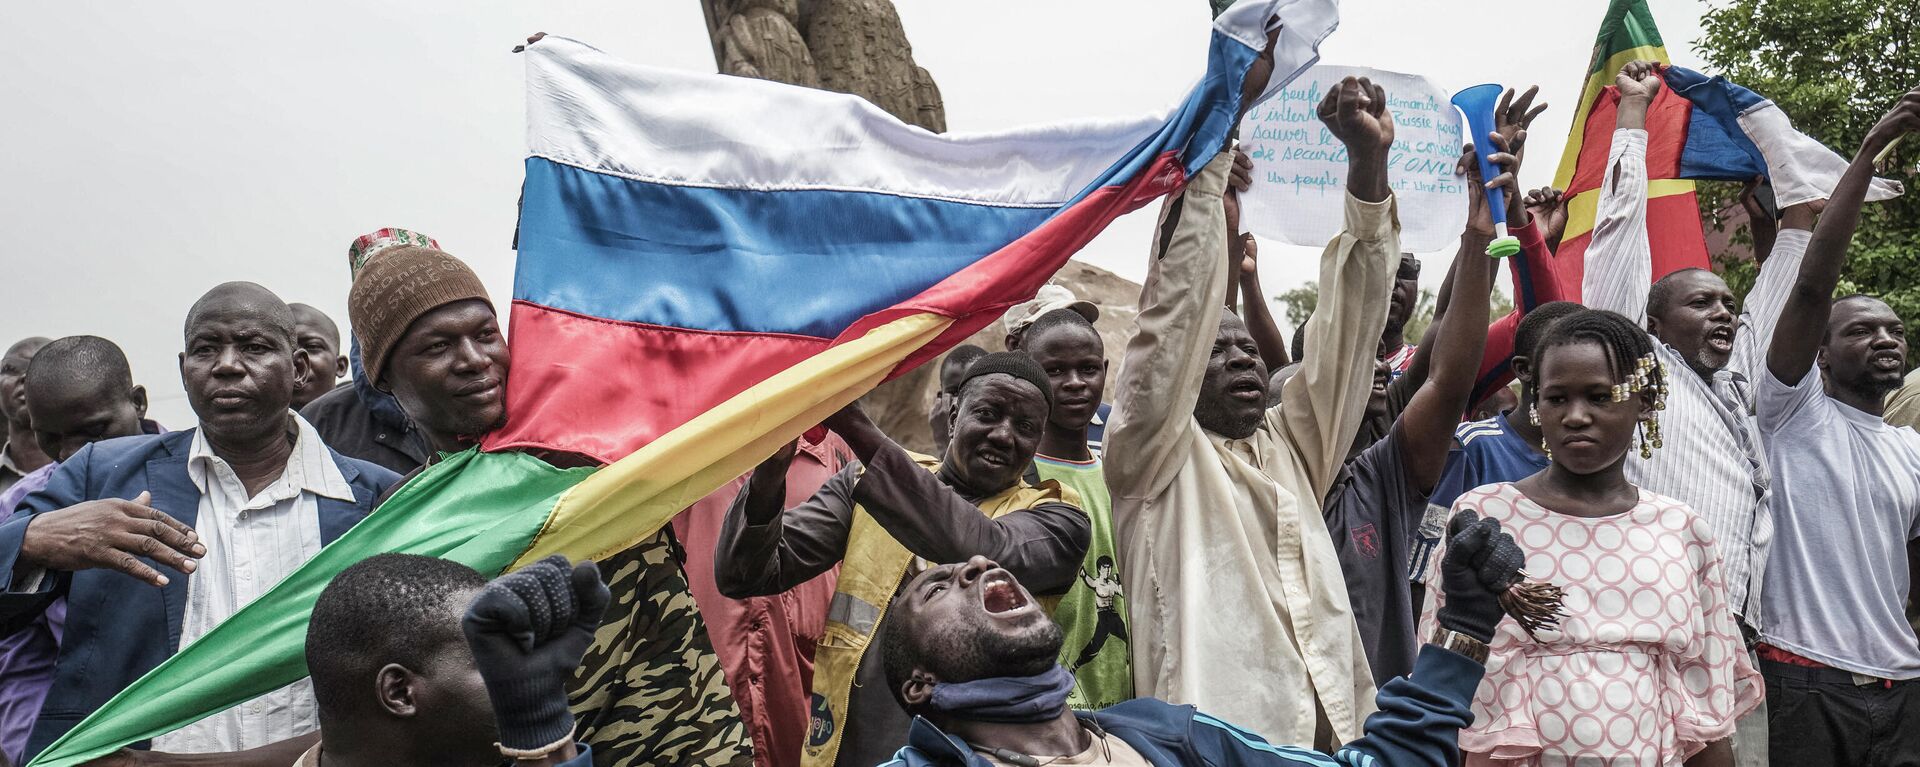 Протестующие размахивают национальными и российскими флагами в столице Мали на демонстрации против французского влияния, 27 мая 2021 года - Sputnik Латвия, 1920, 10.01.2022